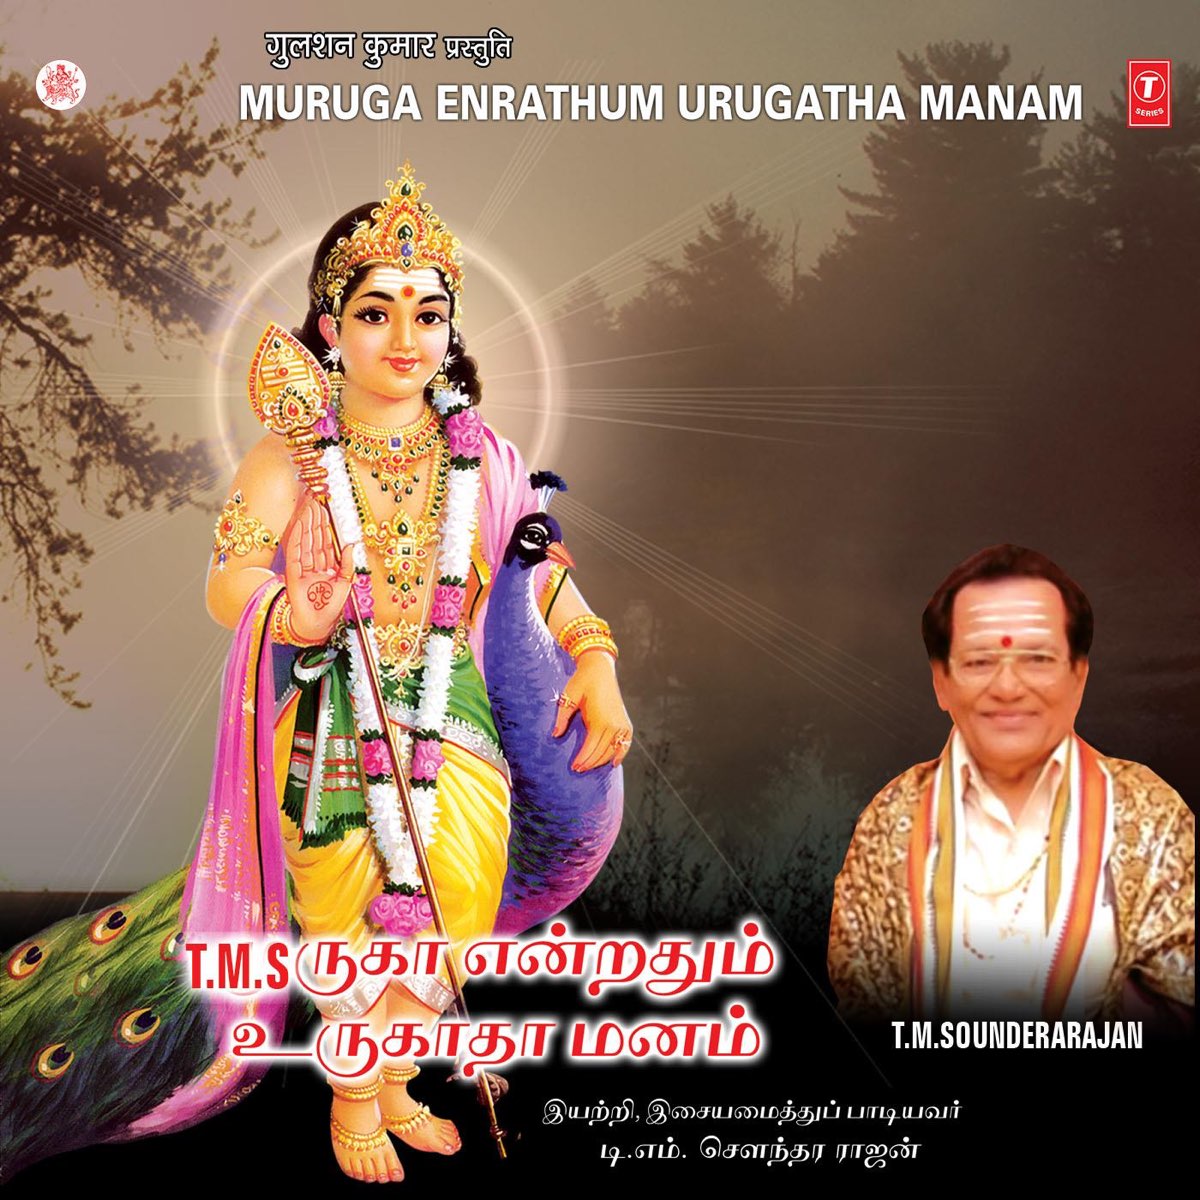 Muruga Endrathum Urugatha Manam by T. M. Soundararajan on Apple Music